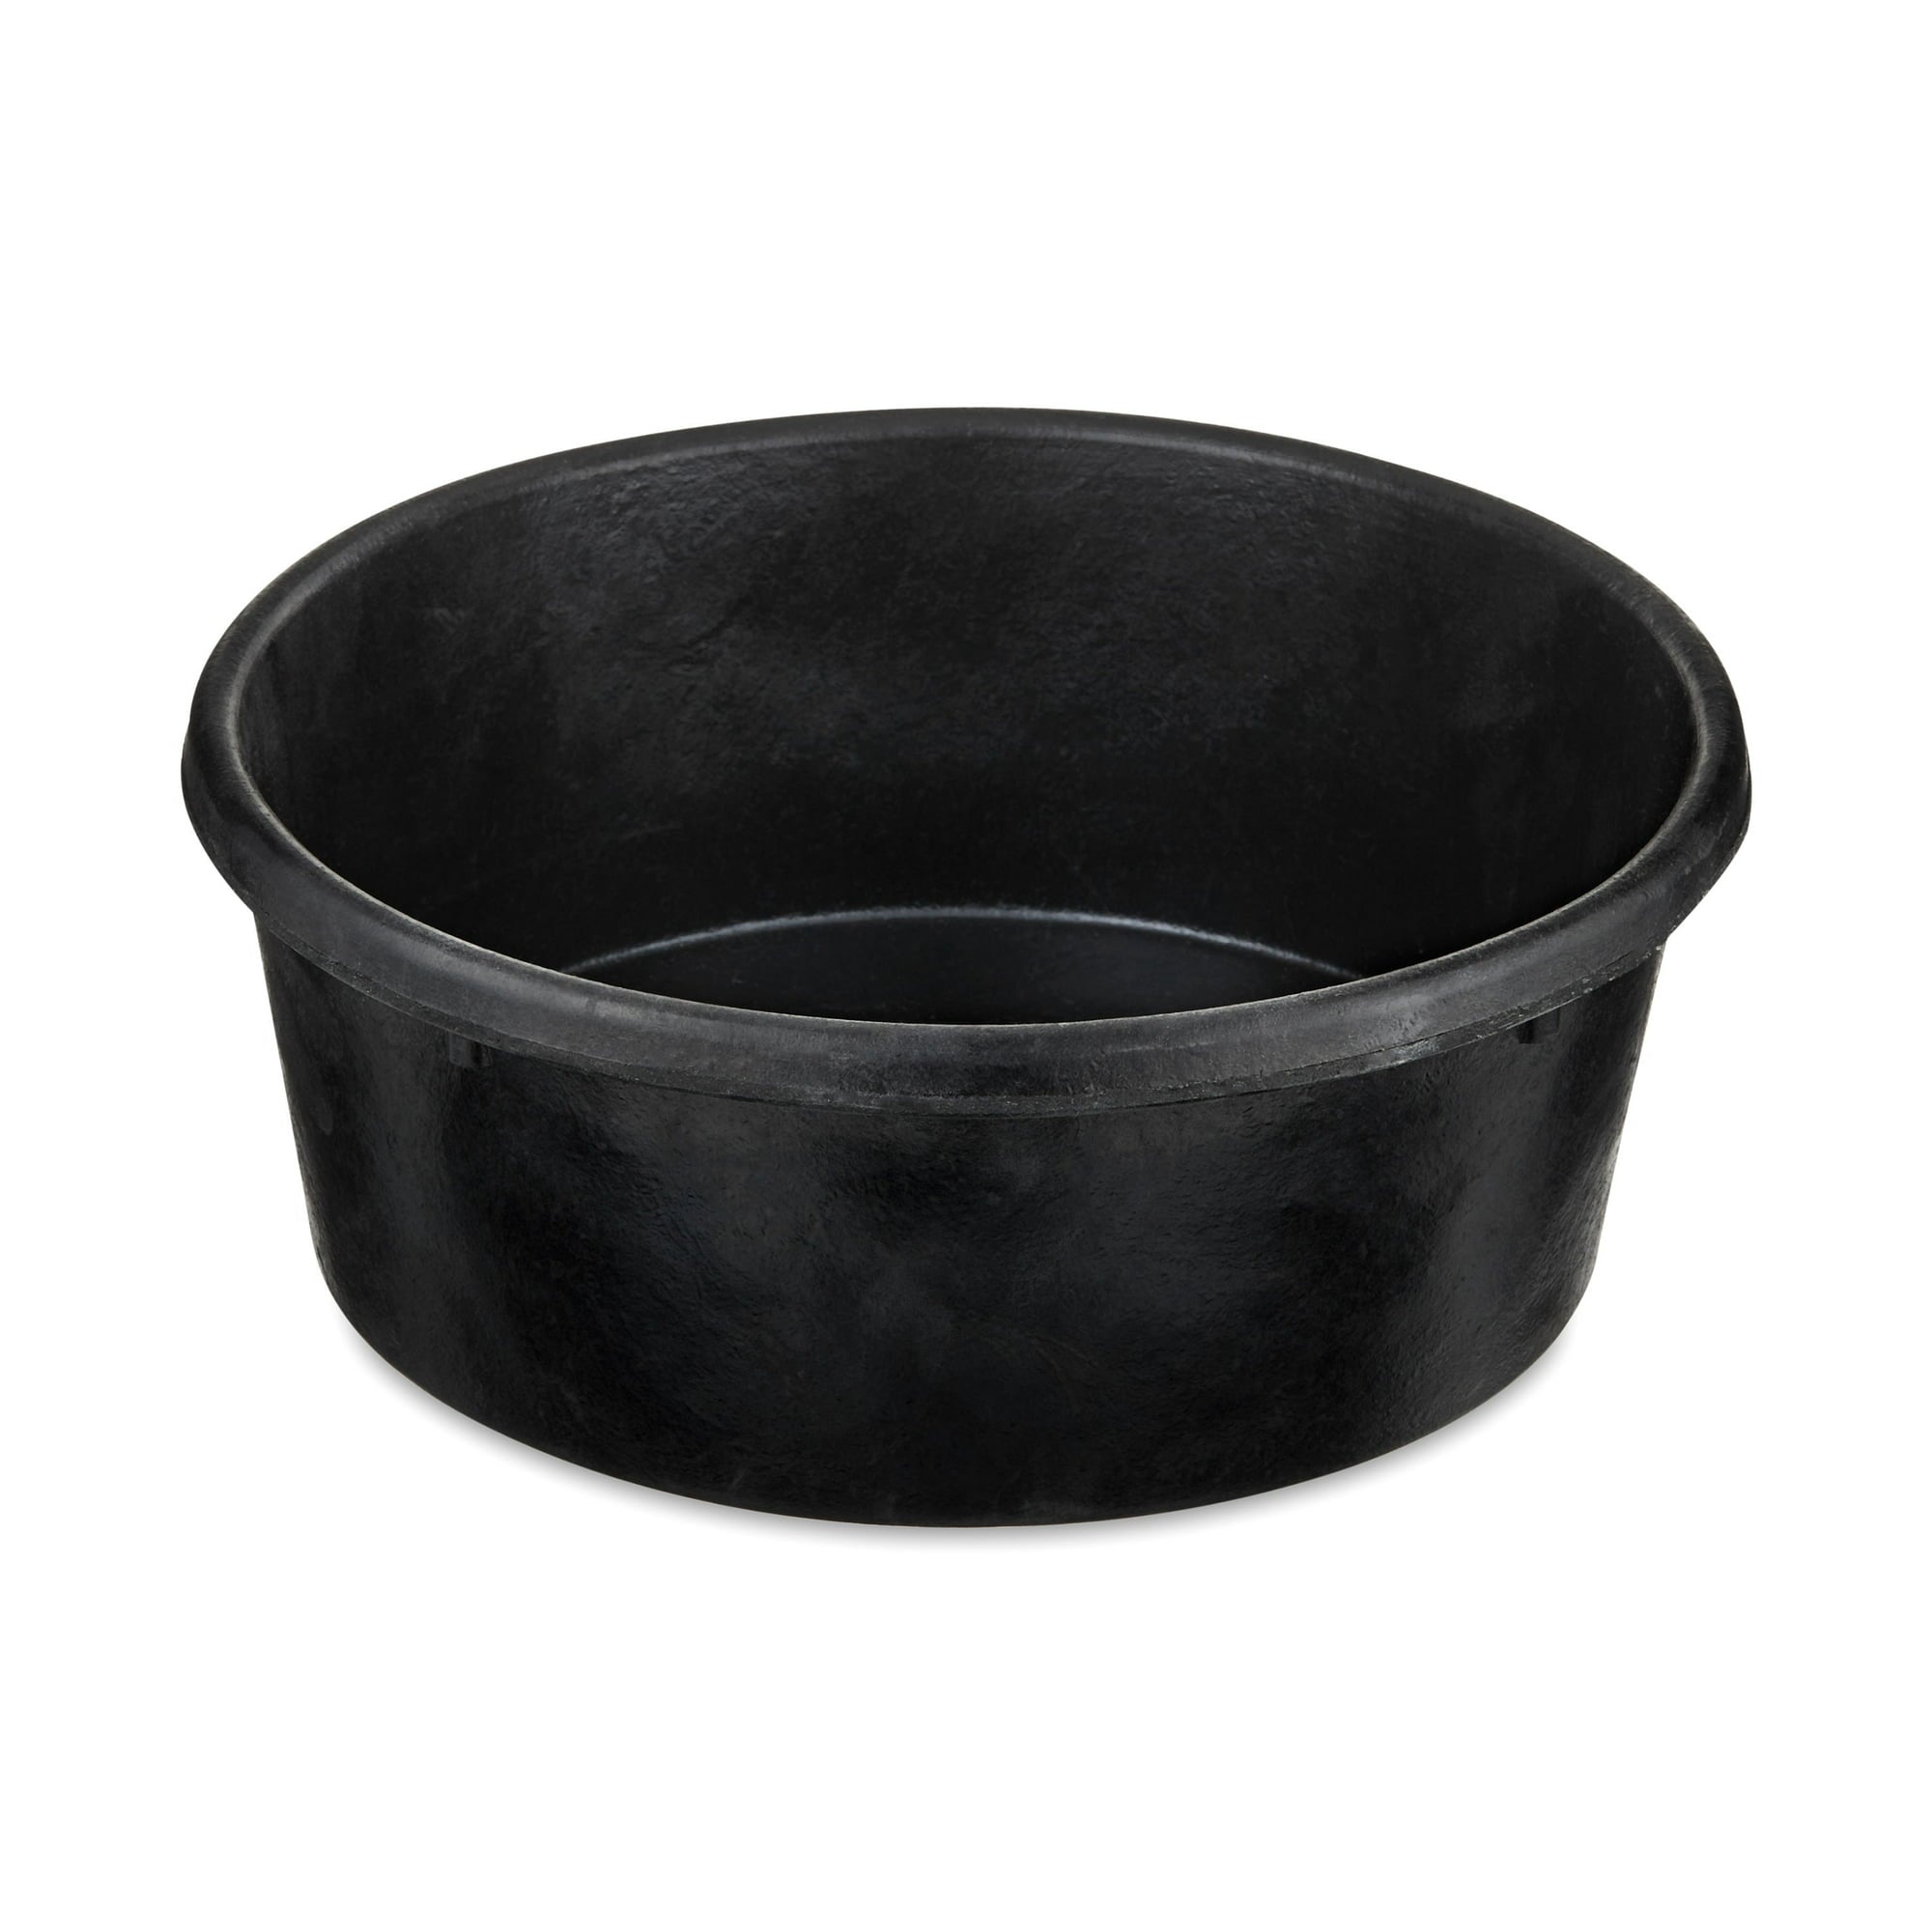 Vibrant Life Large Rubber Dog Bowl, Black, 3 Quart